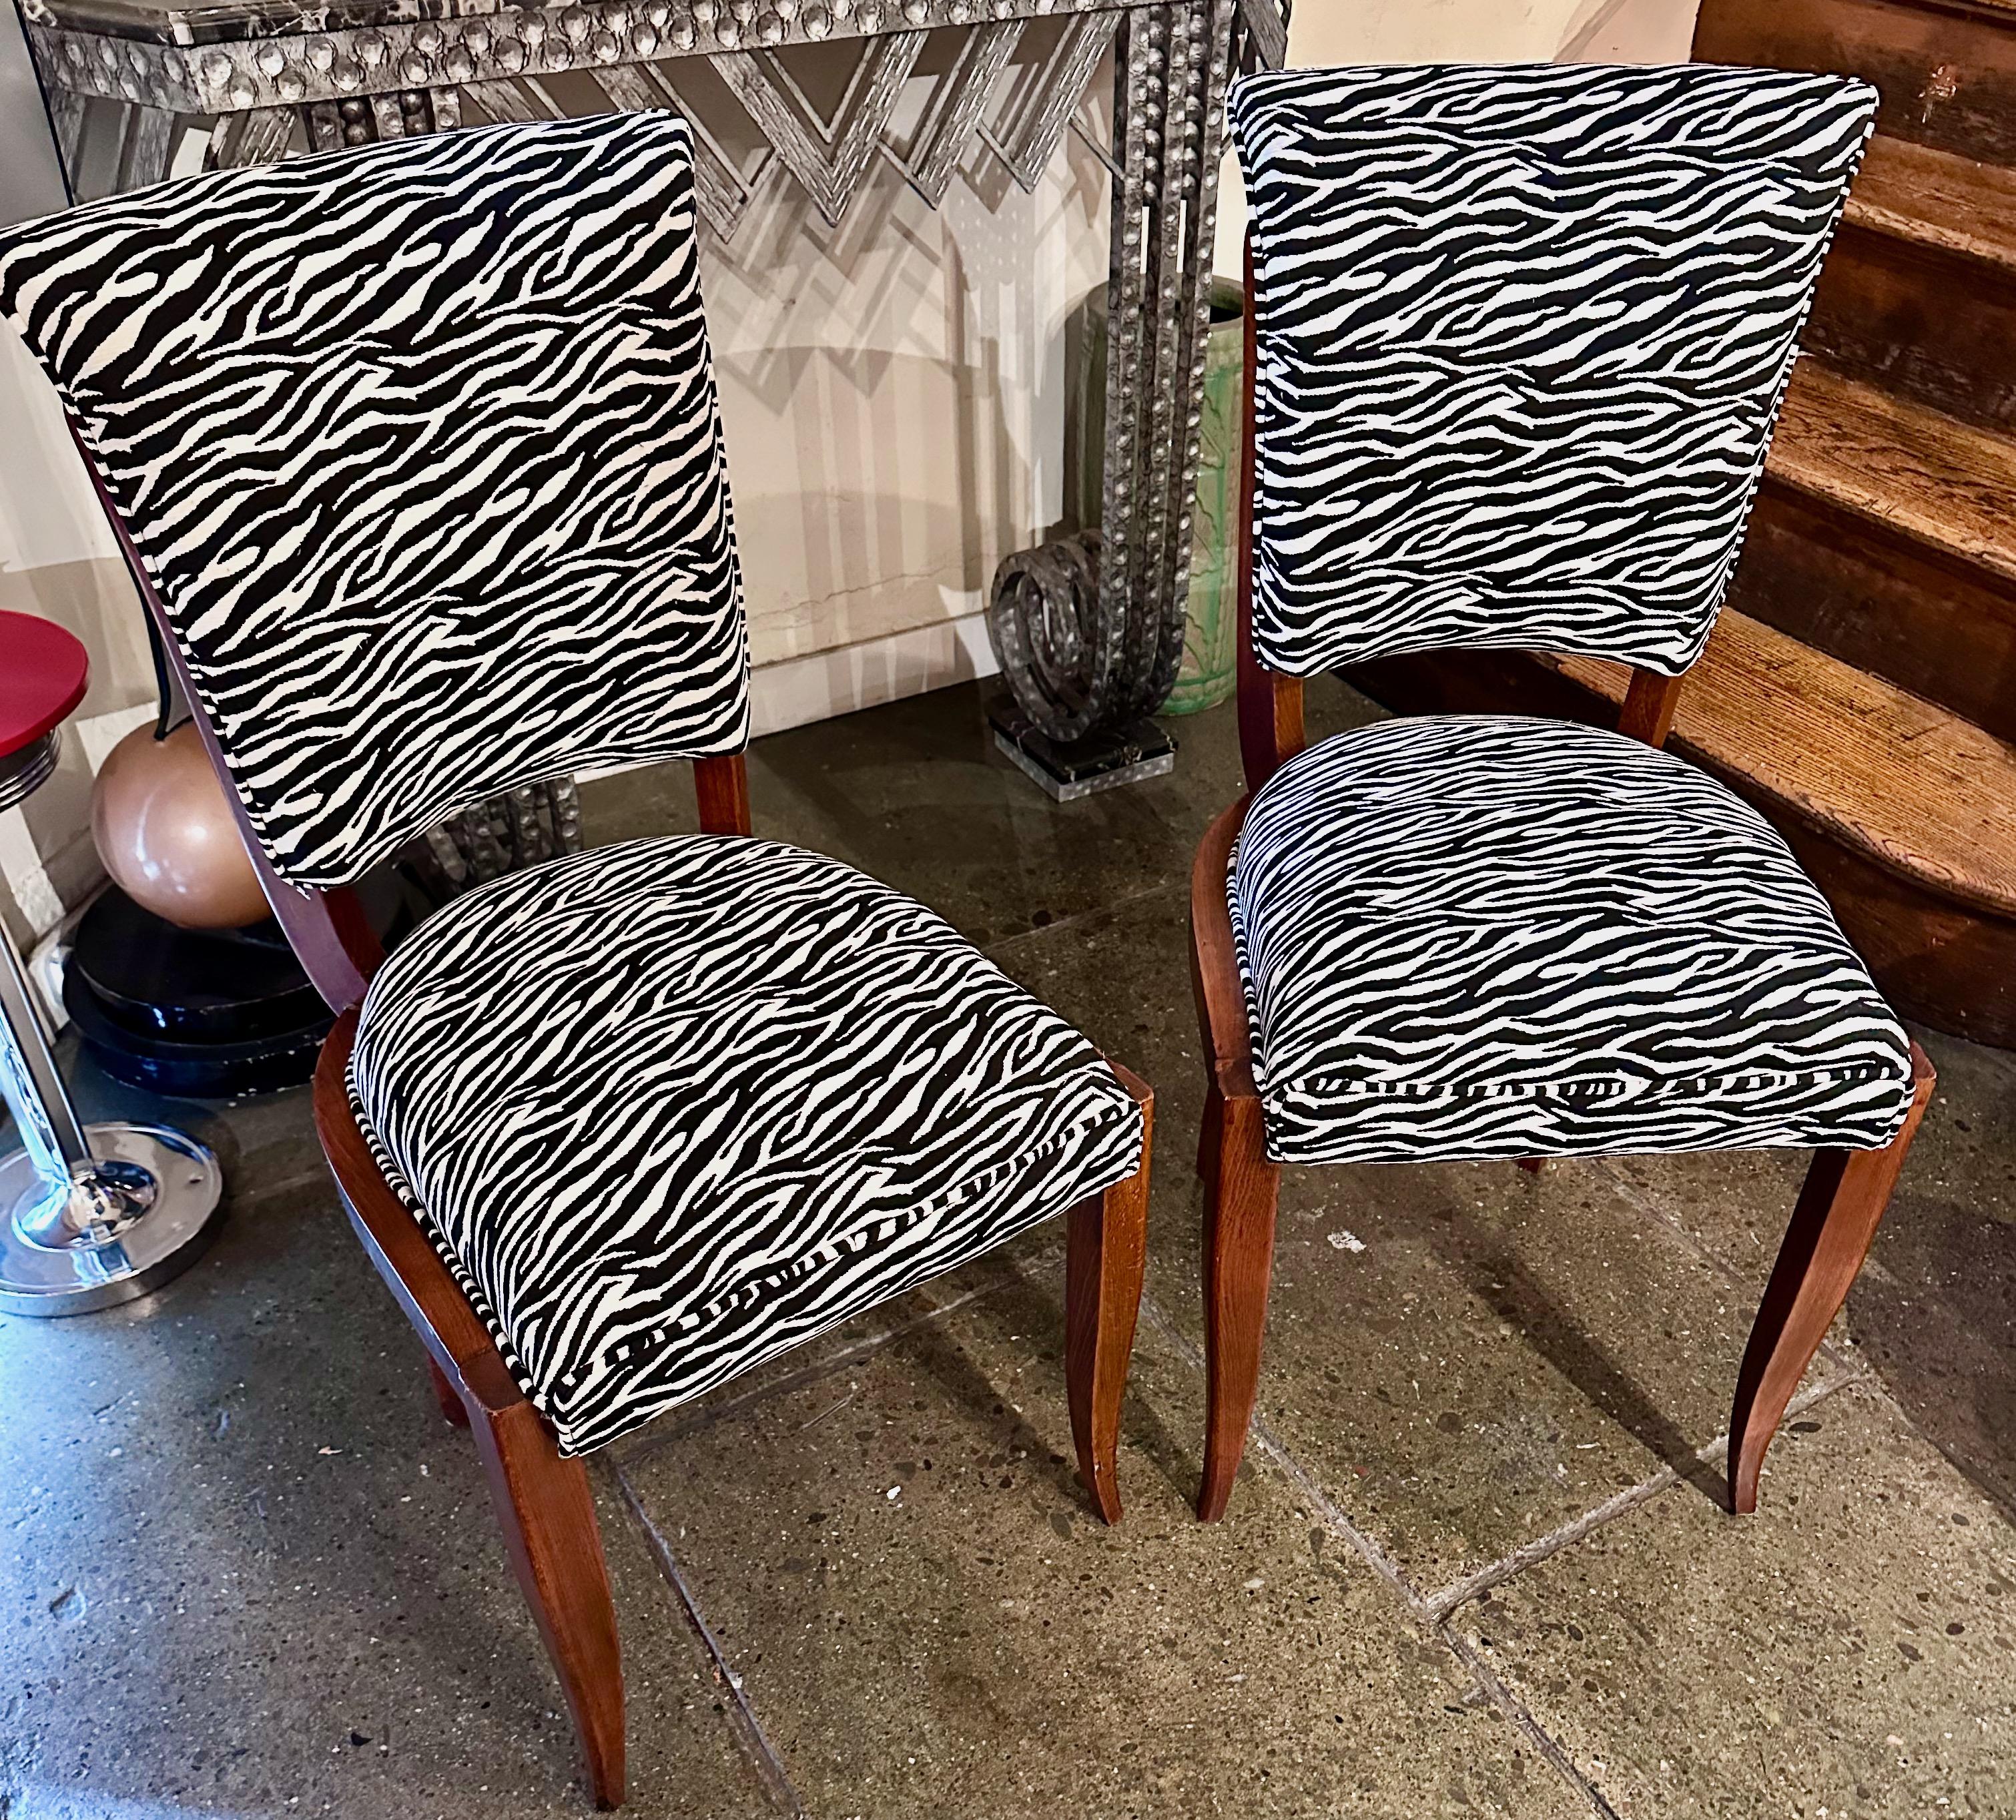 Art Deco Zebra Style Matching Pair of Side Chairs sind ein atemberaubendes Set von zwei Stühlen aus der Art Deco Zeit. Diese Stühle haben freiliegende Mahagonny-Holzrahmen, die erneuert wurden, um ihre ursprüngliche Schönheit hervorzuheben.

Die